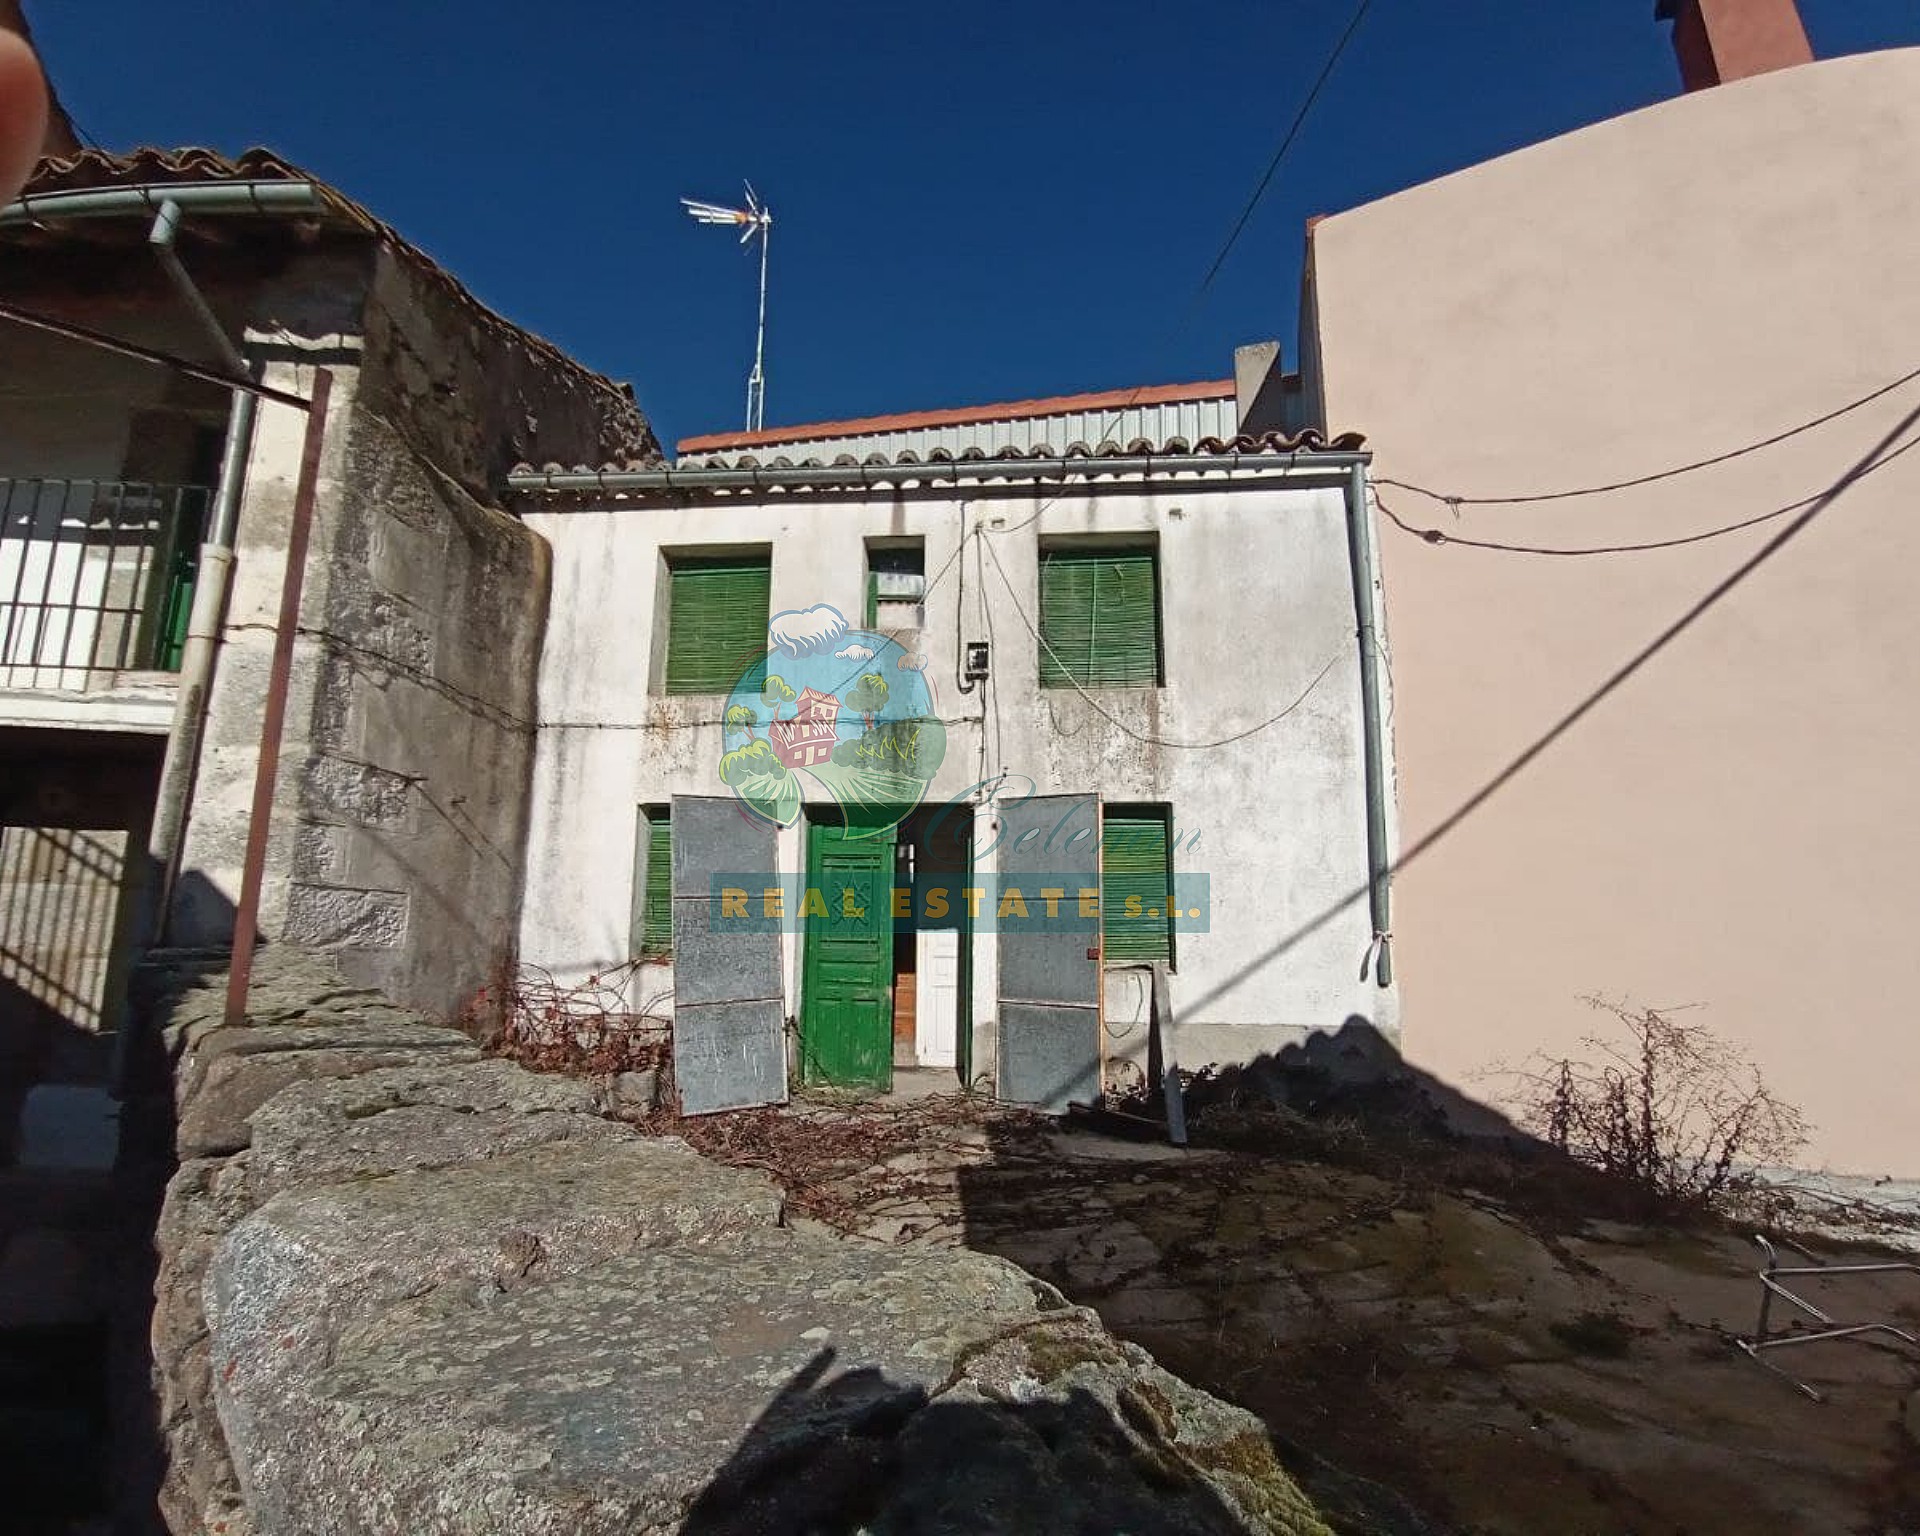 Barn for rehabilitation in Sierra de Gredos